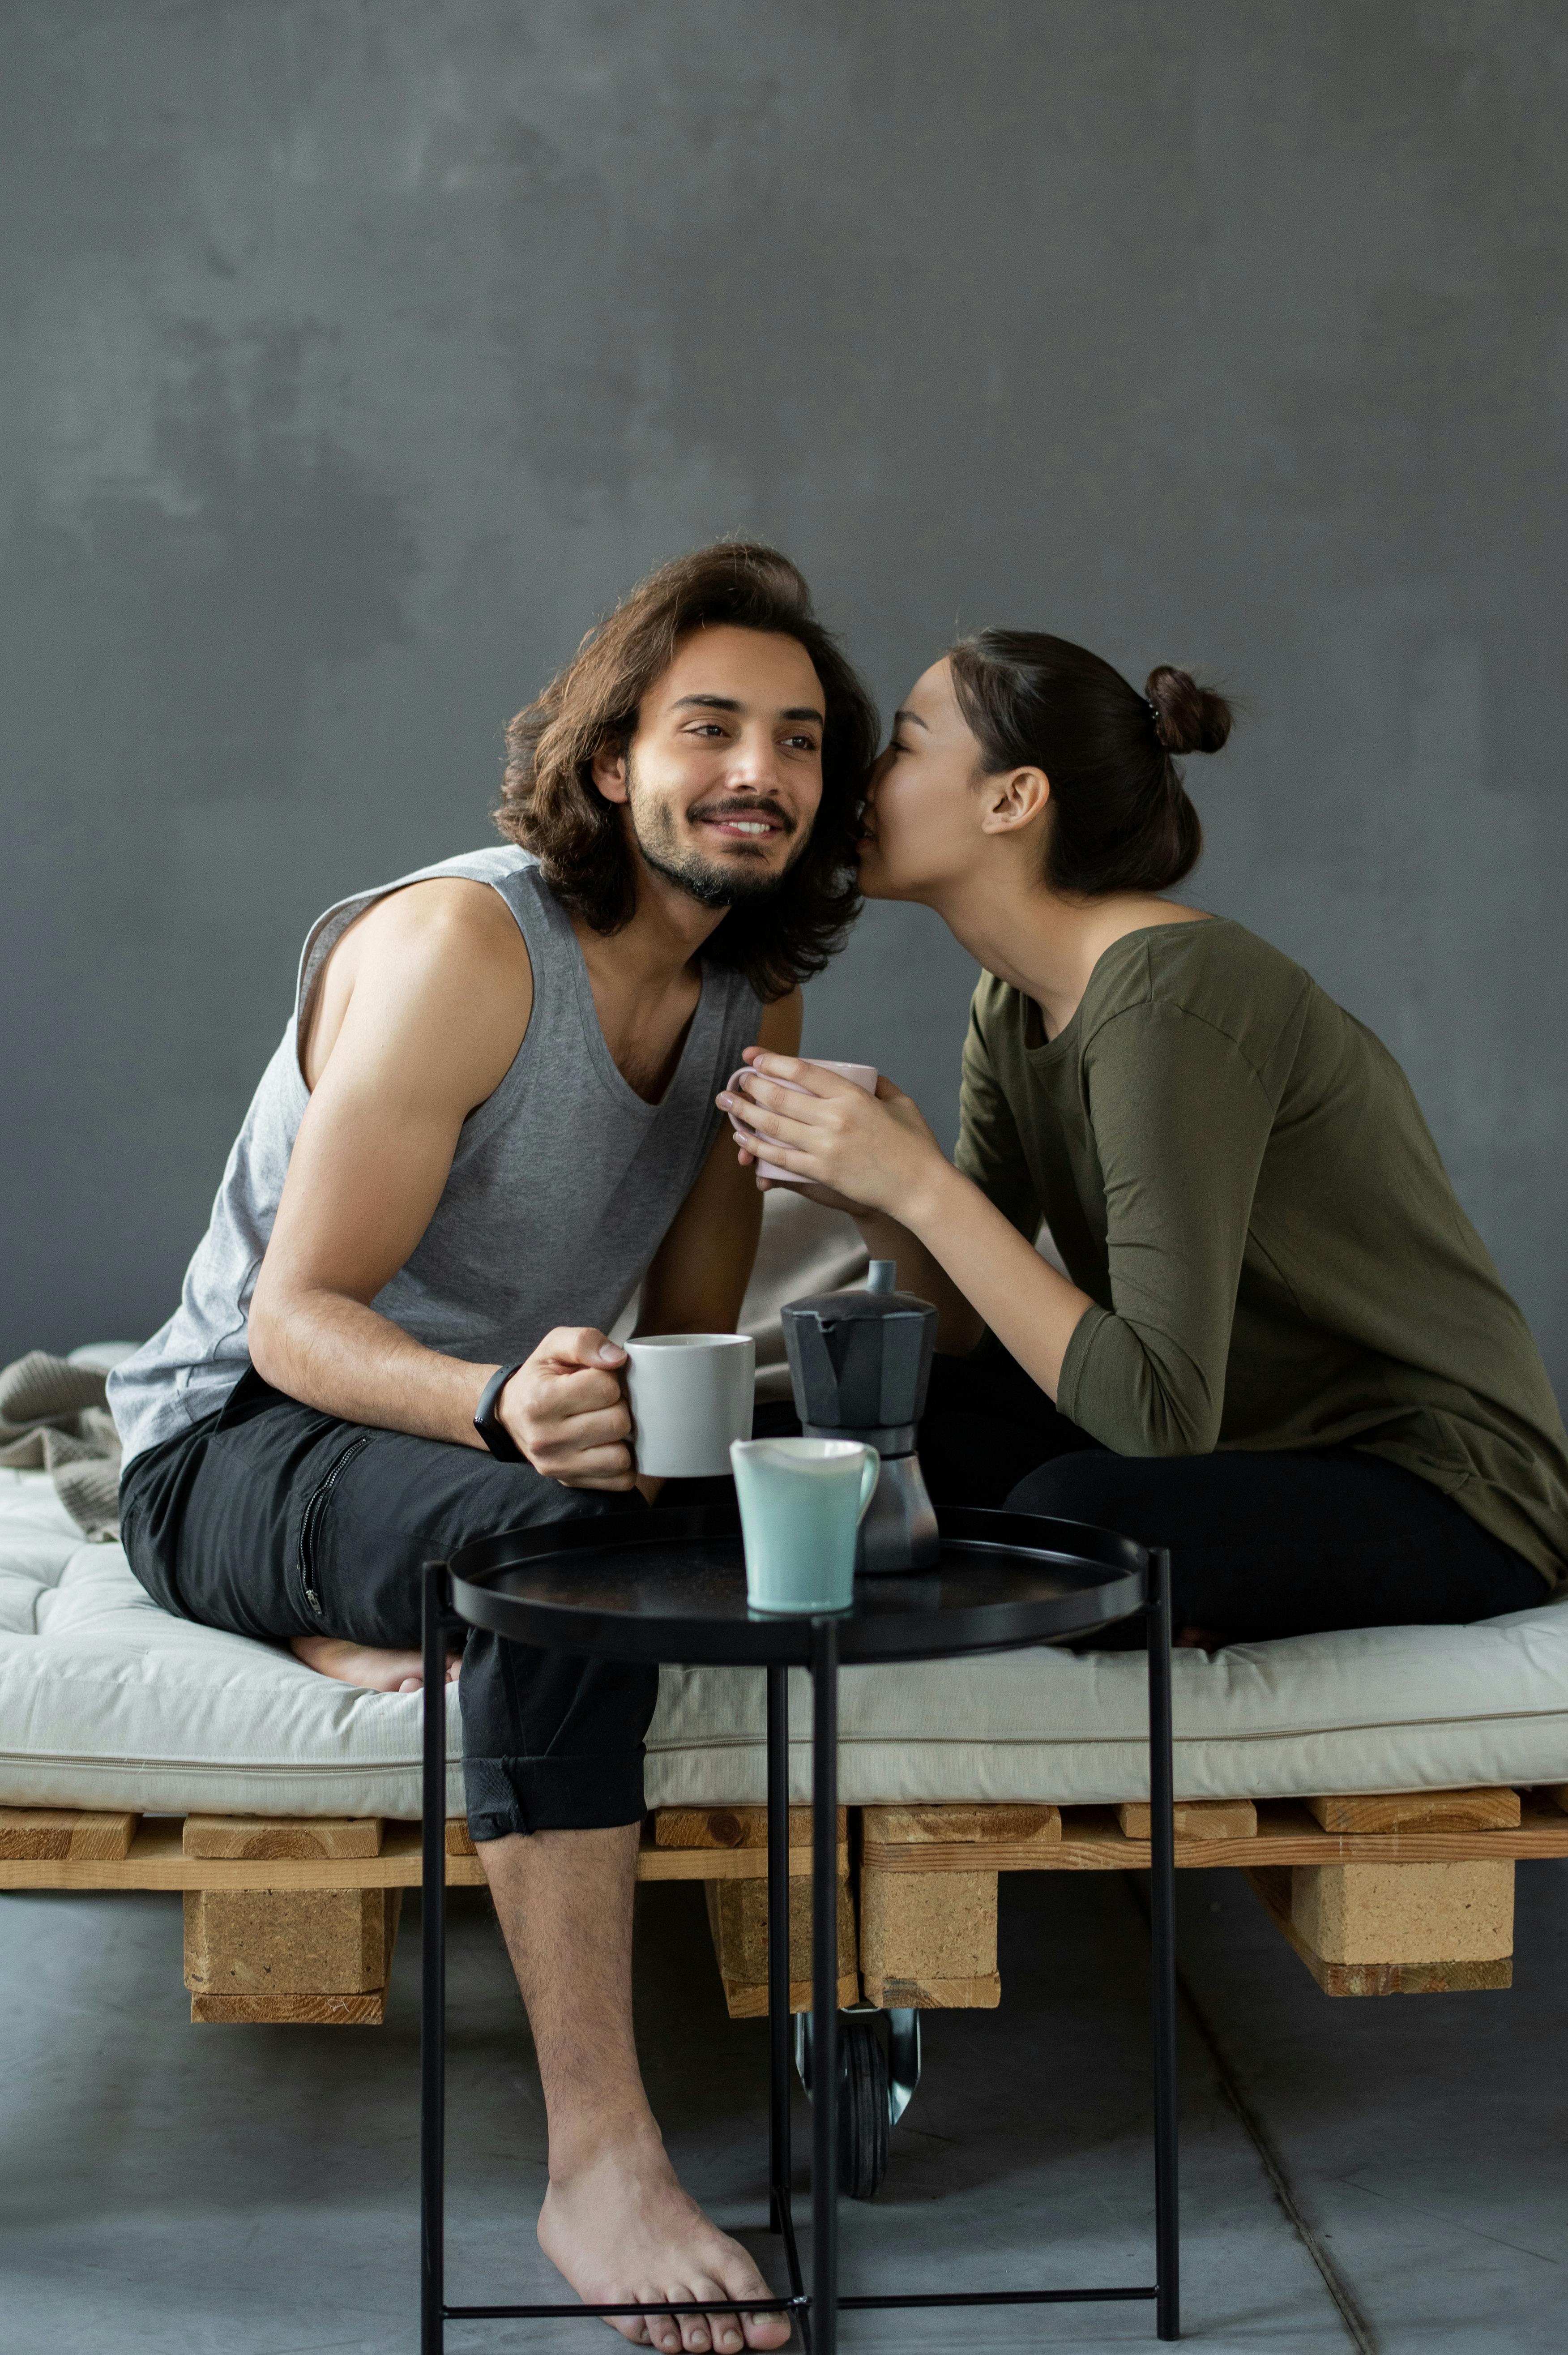 Ein Mann lächelt, während eine Frau ihm bei einem Getränk etwas zuflüstert | Quelle: Pexels